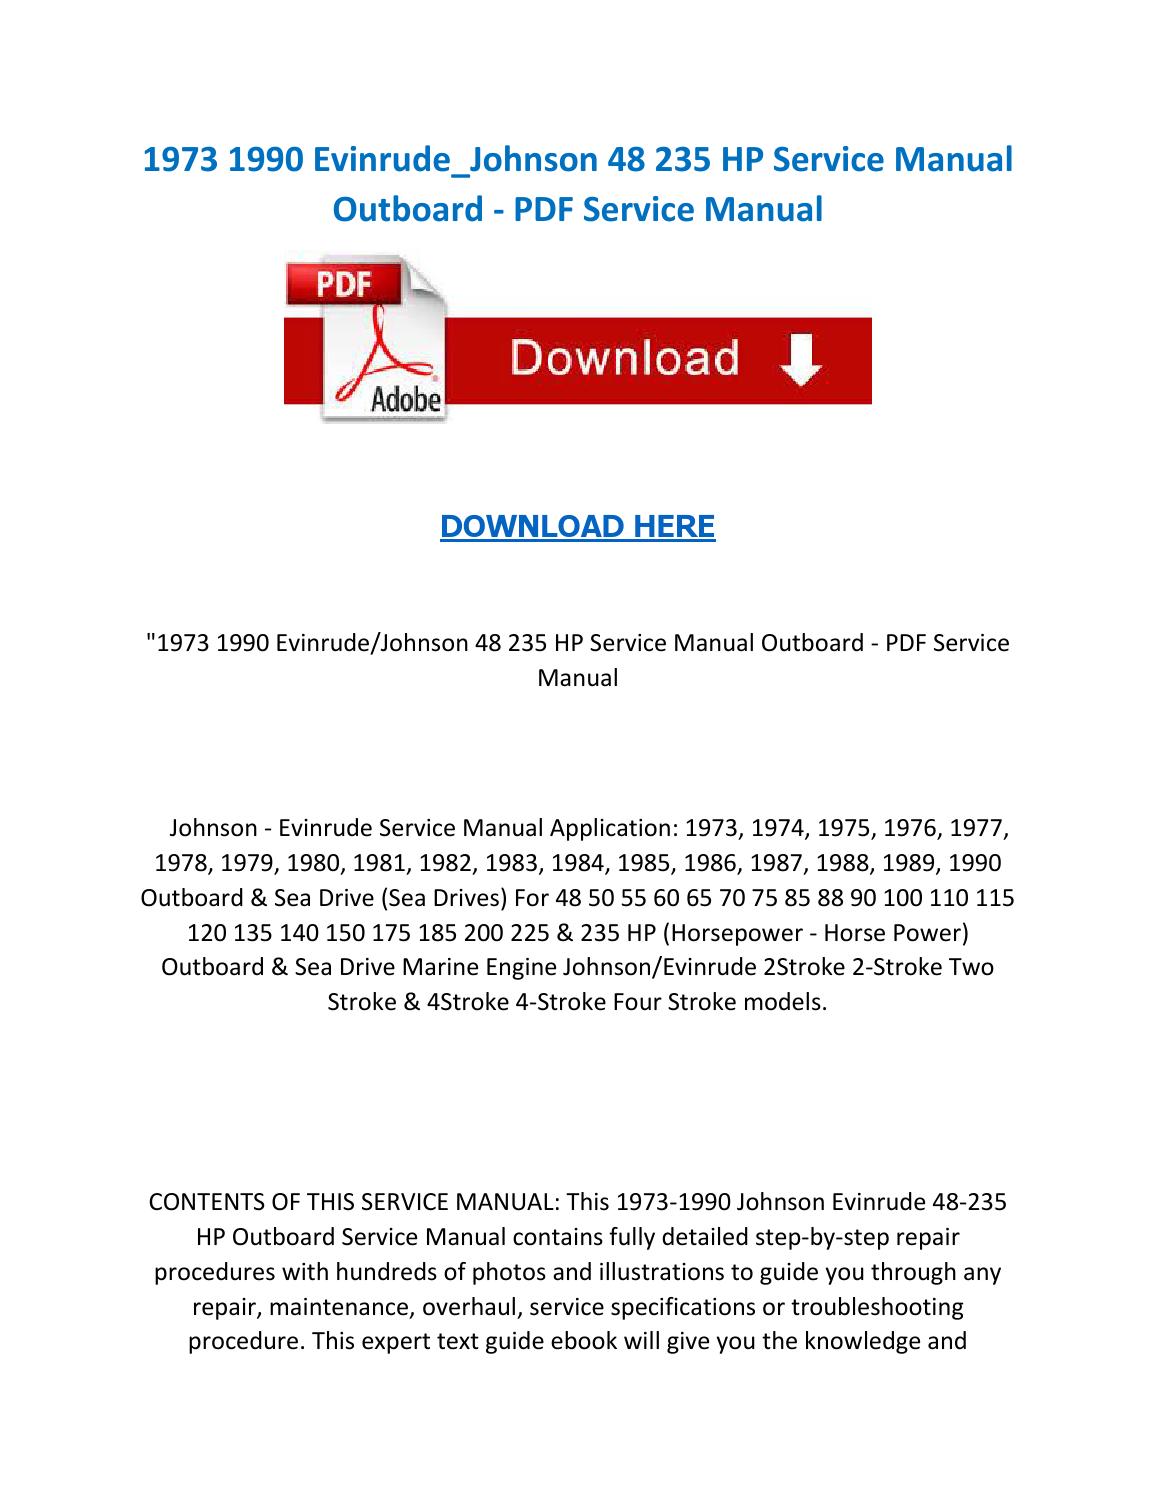 Evinrude Outboard Repair Manual Free Download